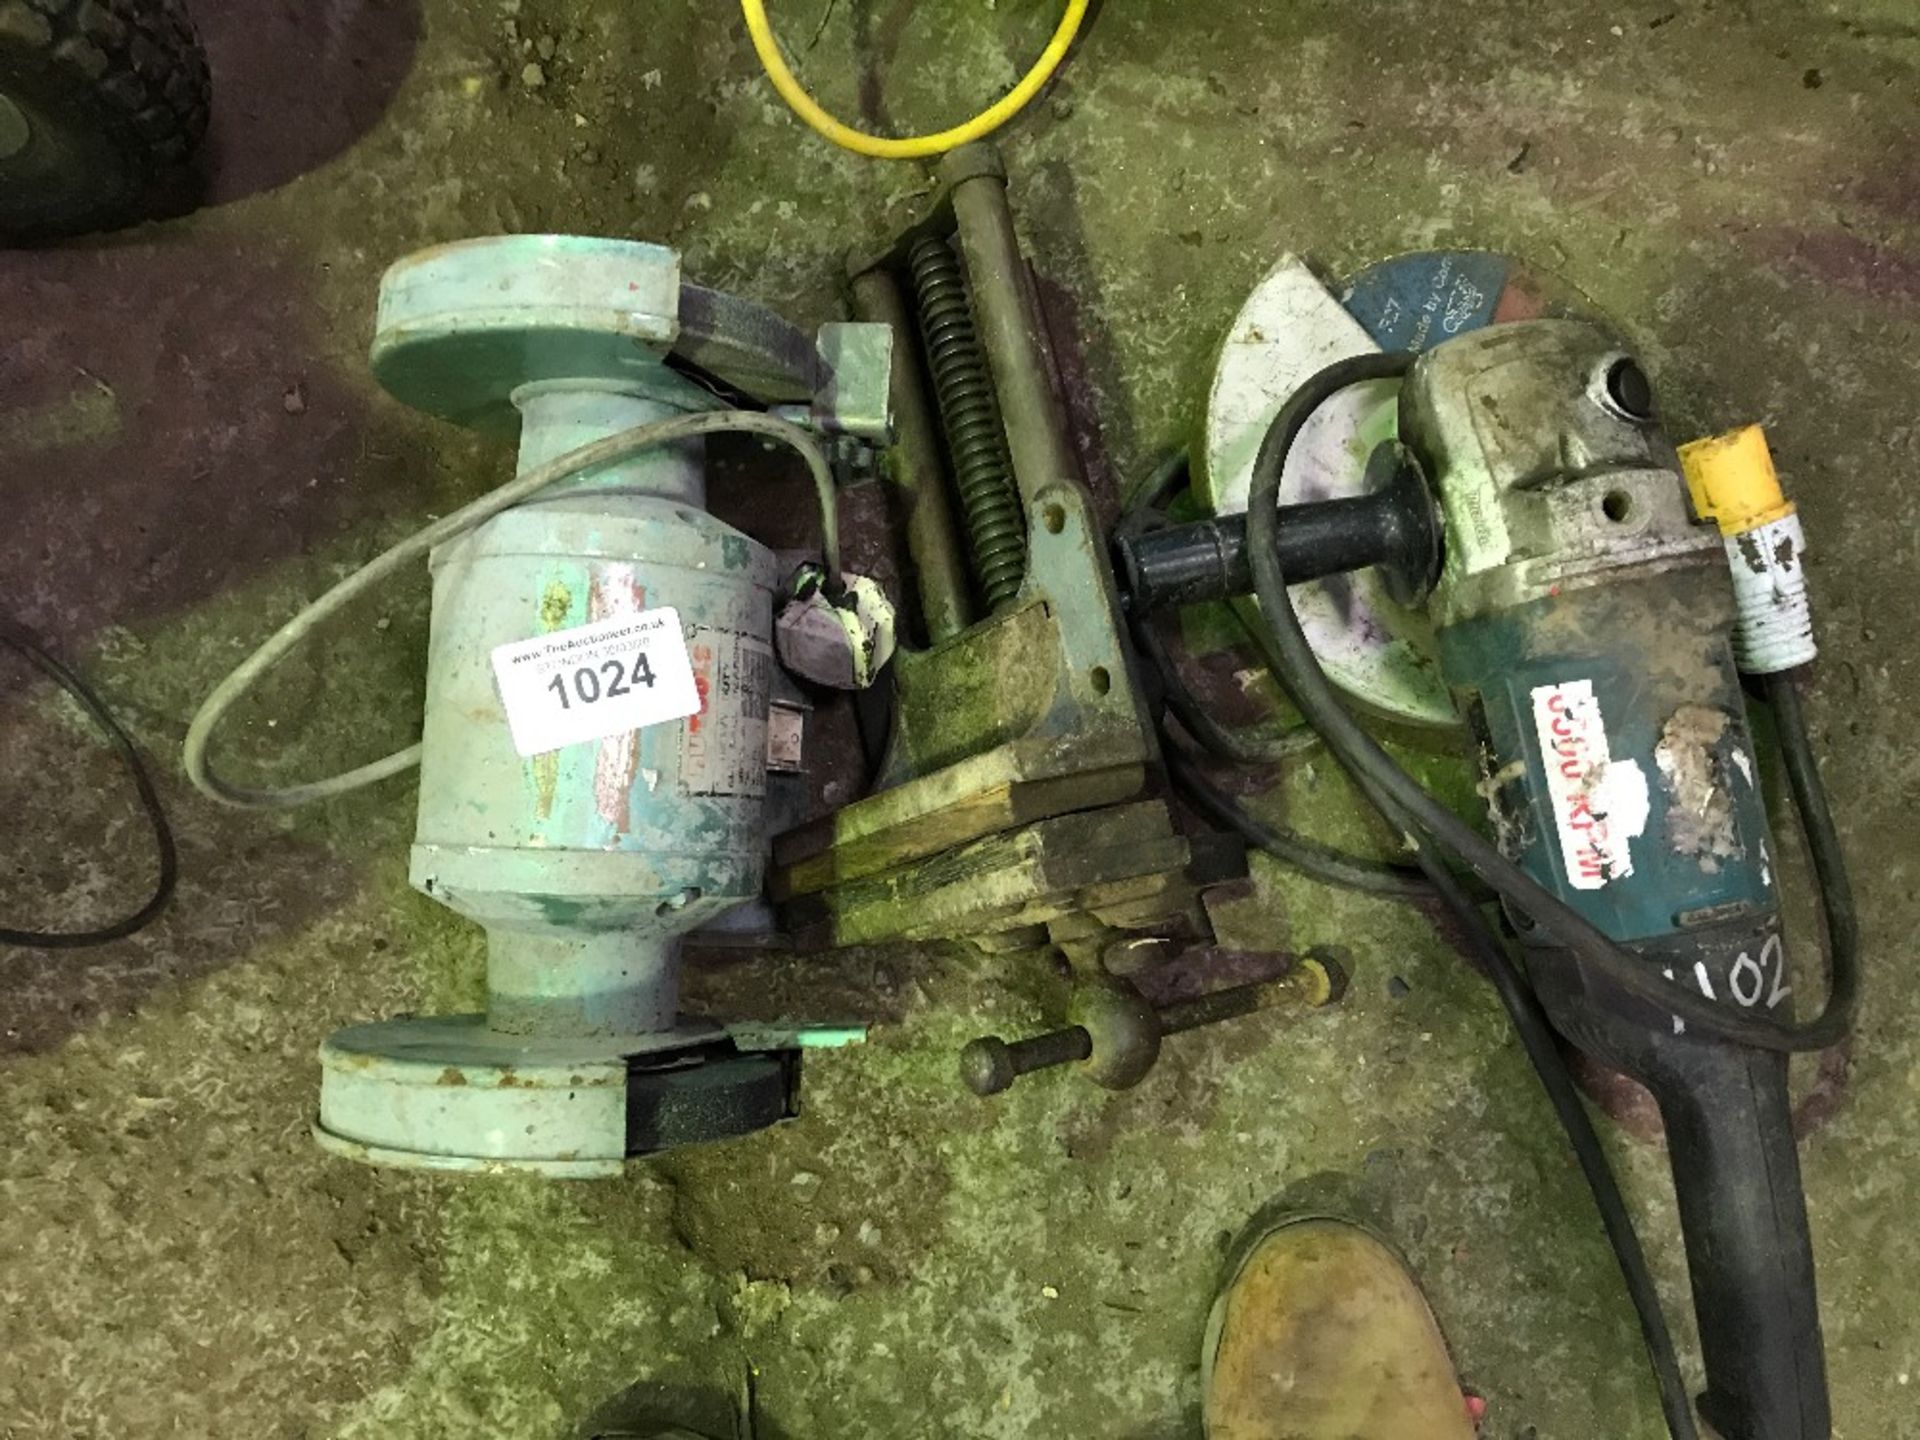 240v Bench grinder, vice and 110v angle grinder